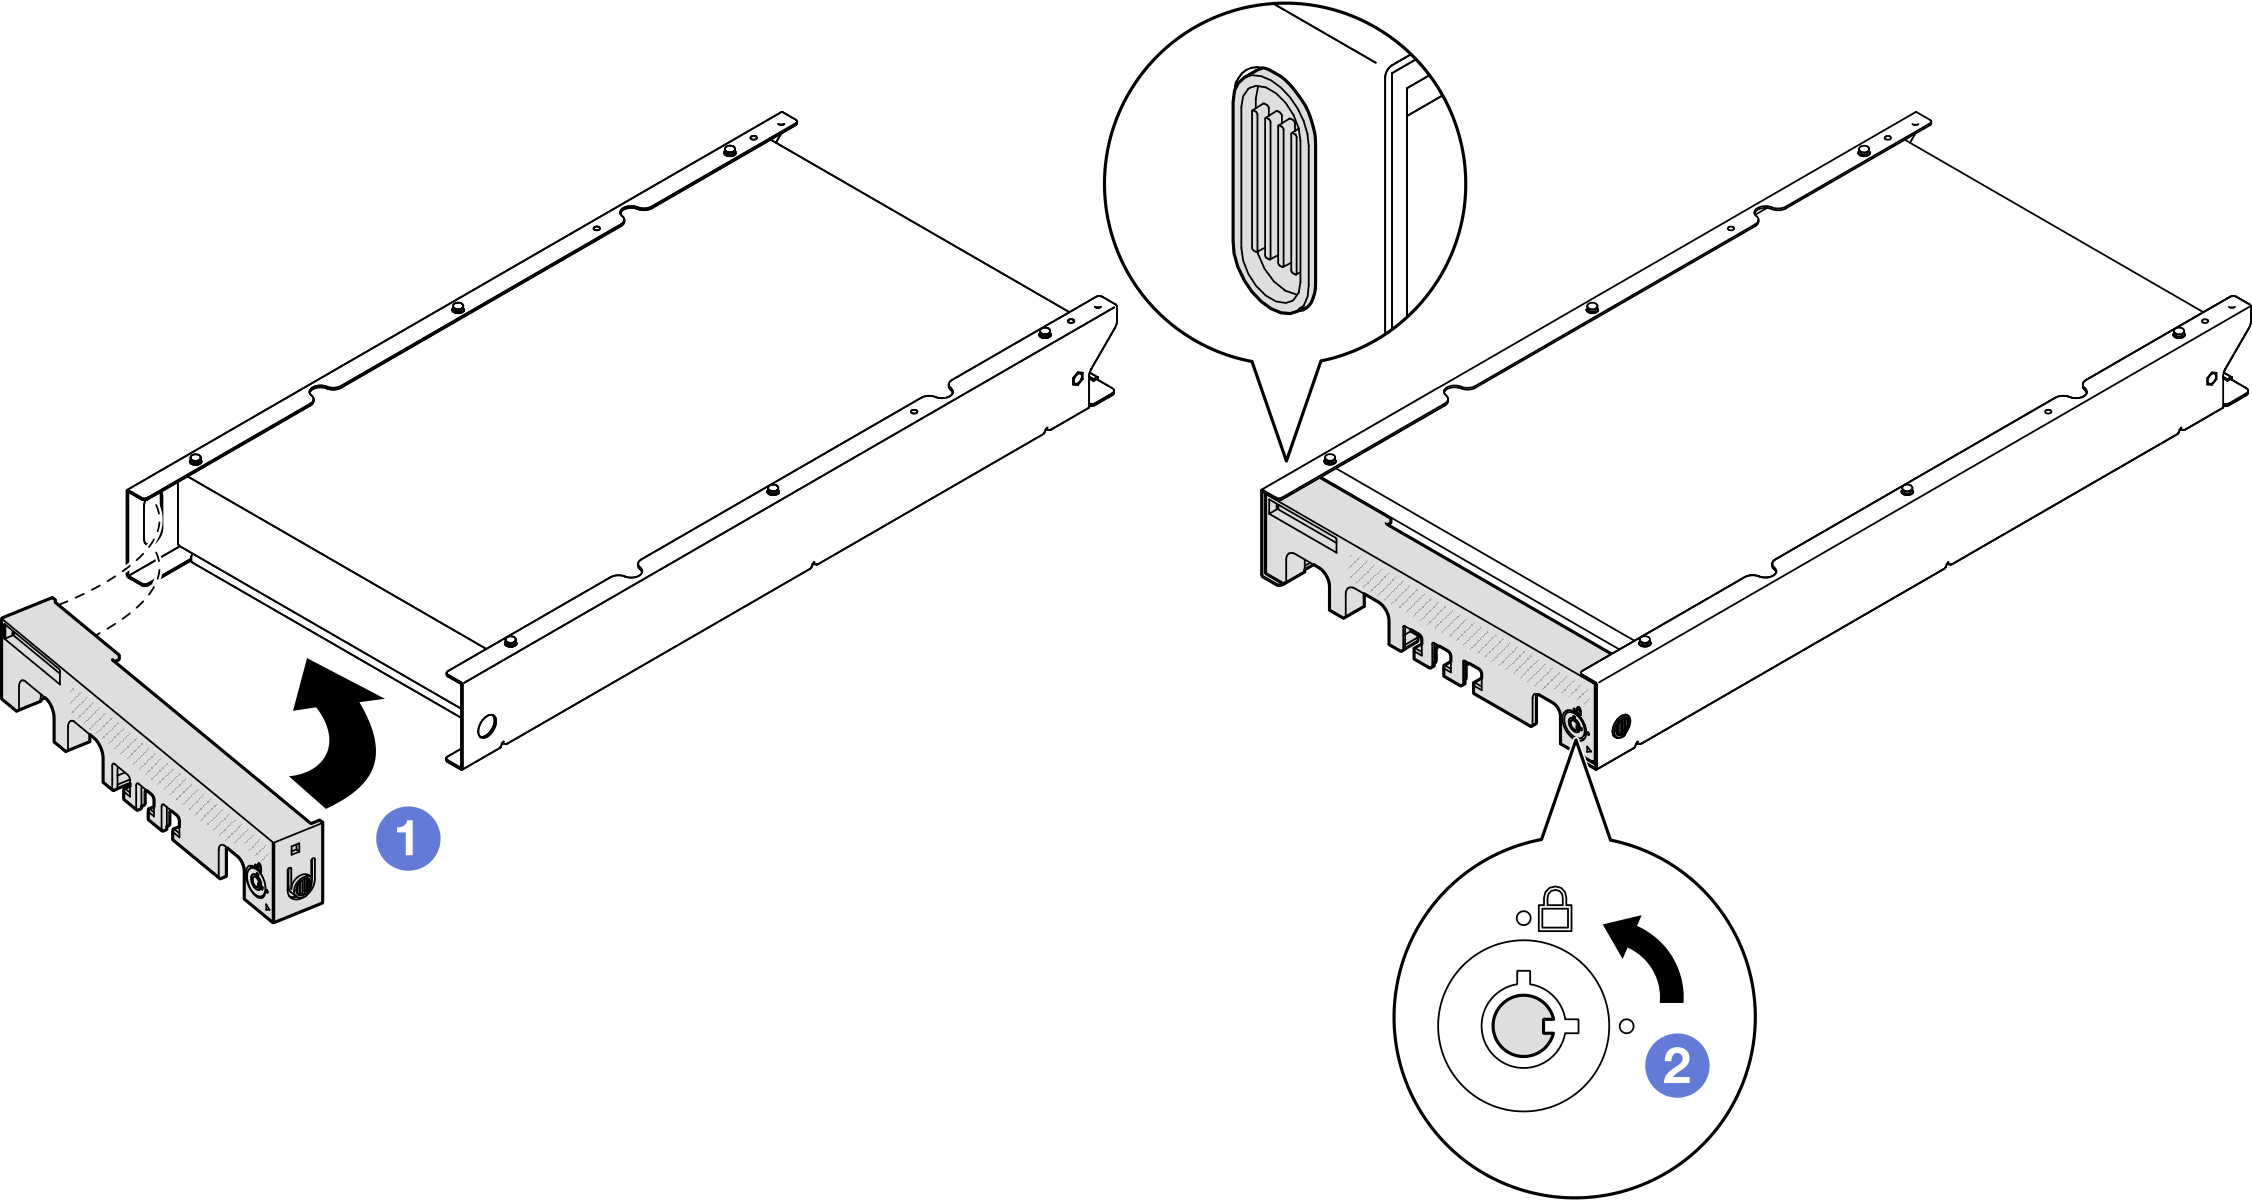 Installing a security bezel onto a node sleeve